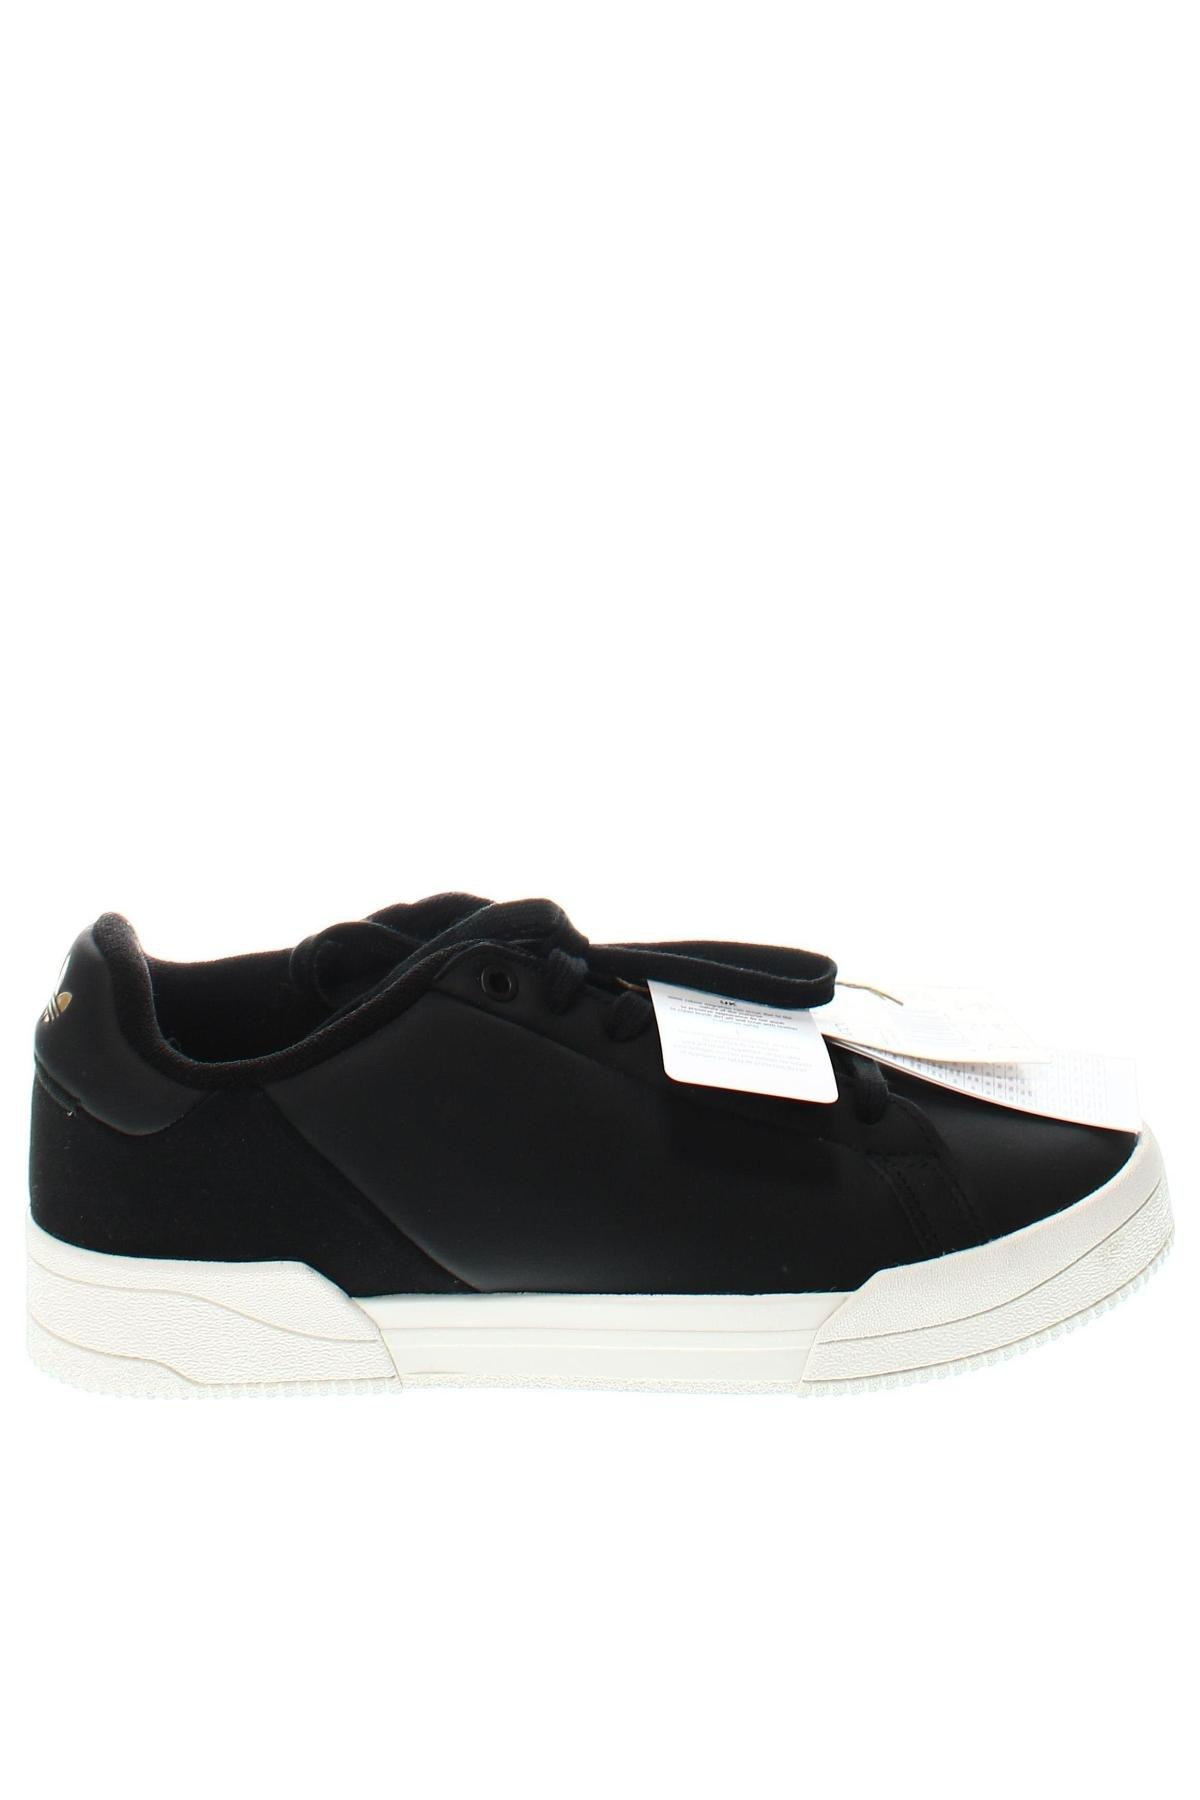 Παπούτσια Adidas Originals, Μέγεθος 41, Χρώμα Μαύρο, Τιμή 97,94 €